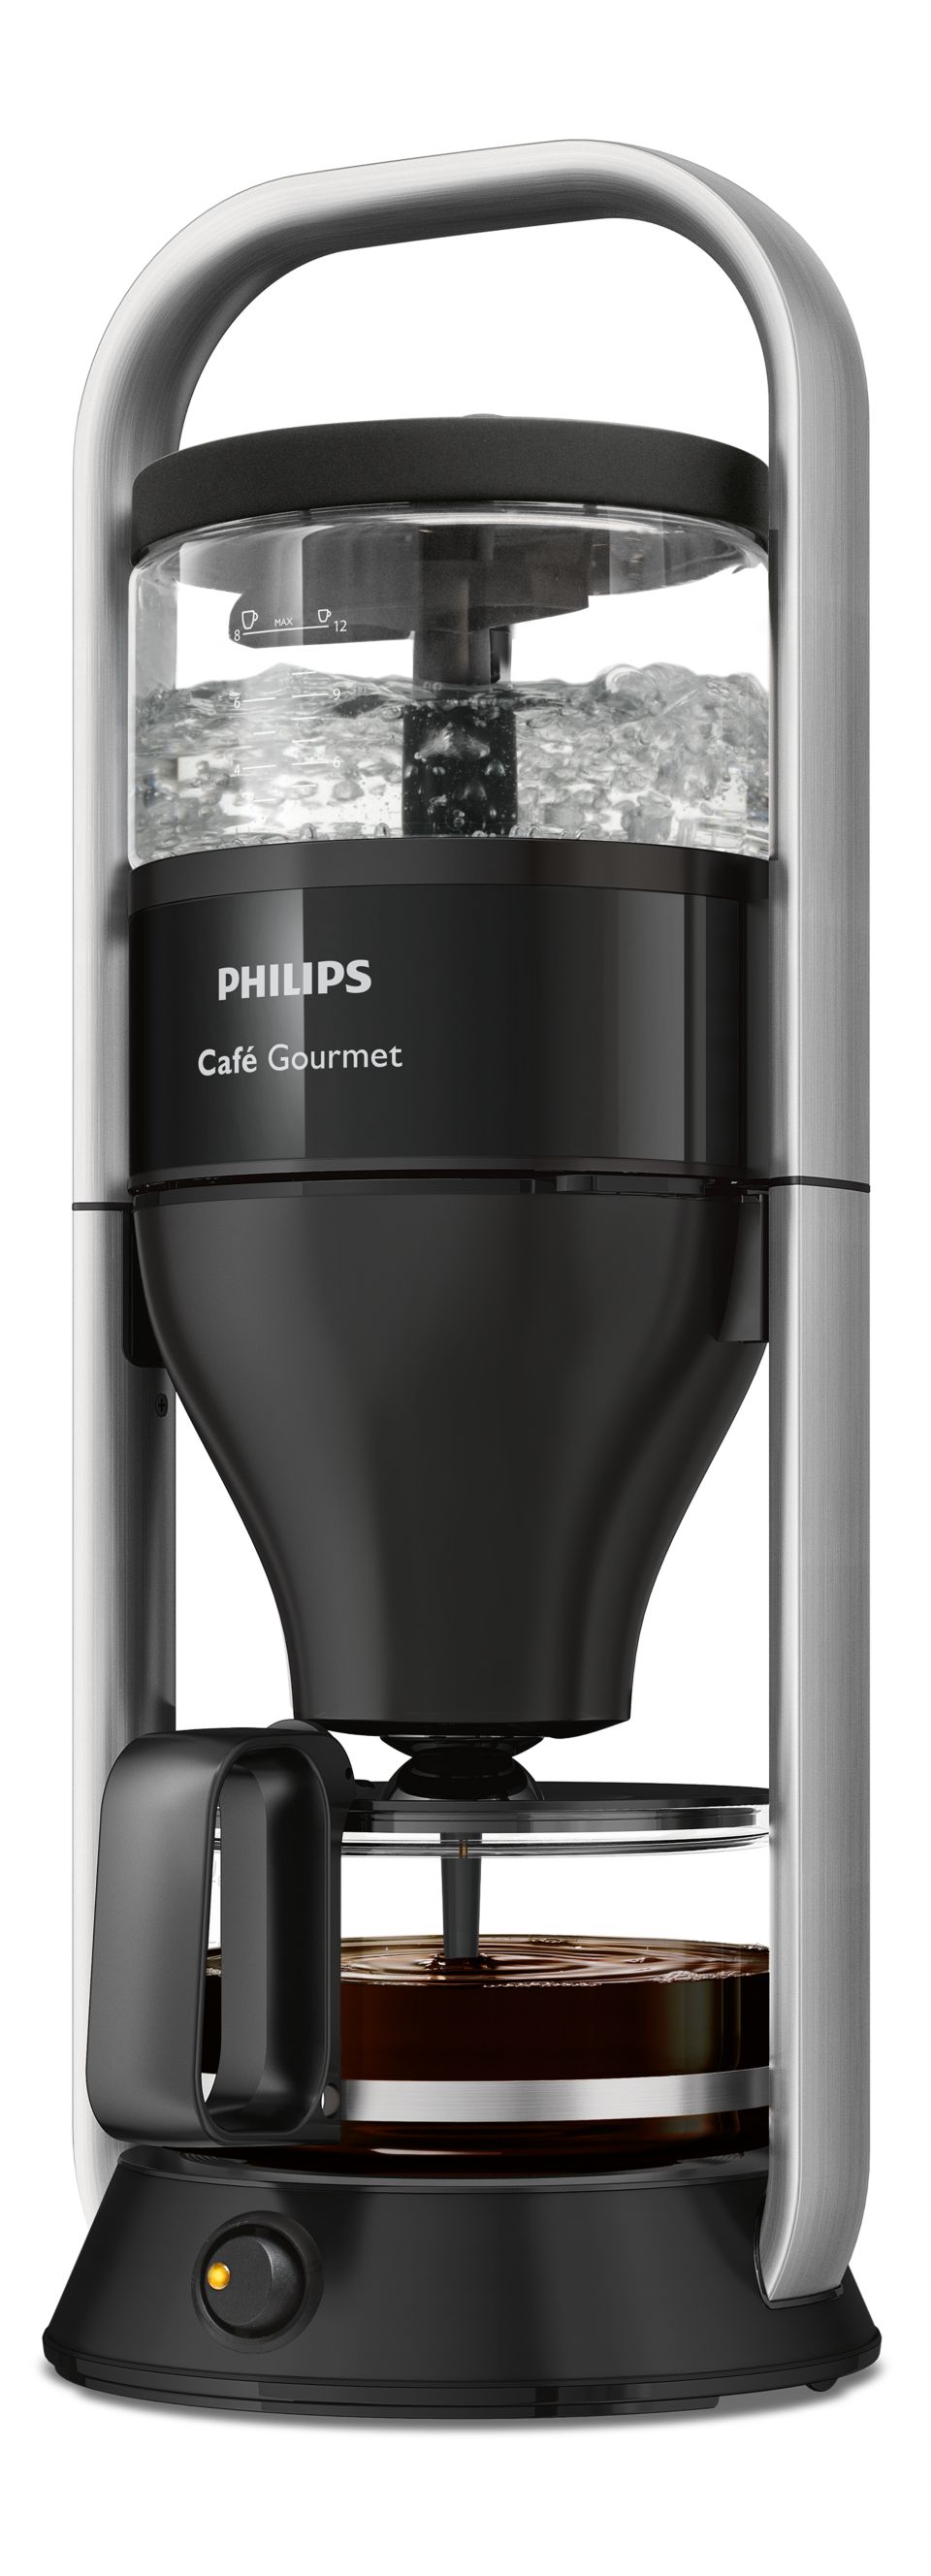 Graden Celsius specificeren Harnas Café Gourmet Koffiezetapparaat HD5408/60R1 | Philips